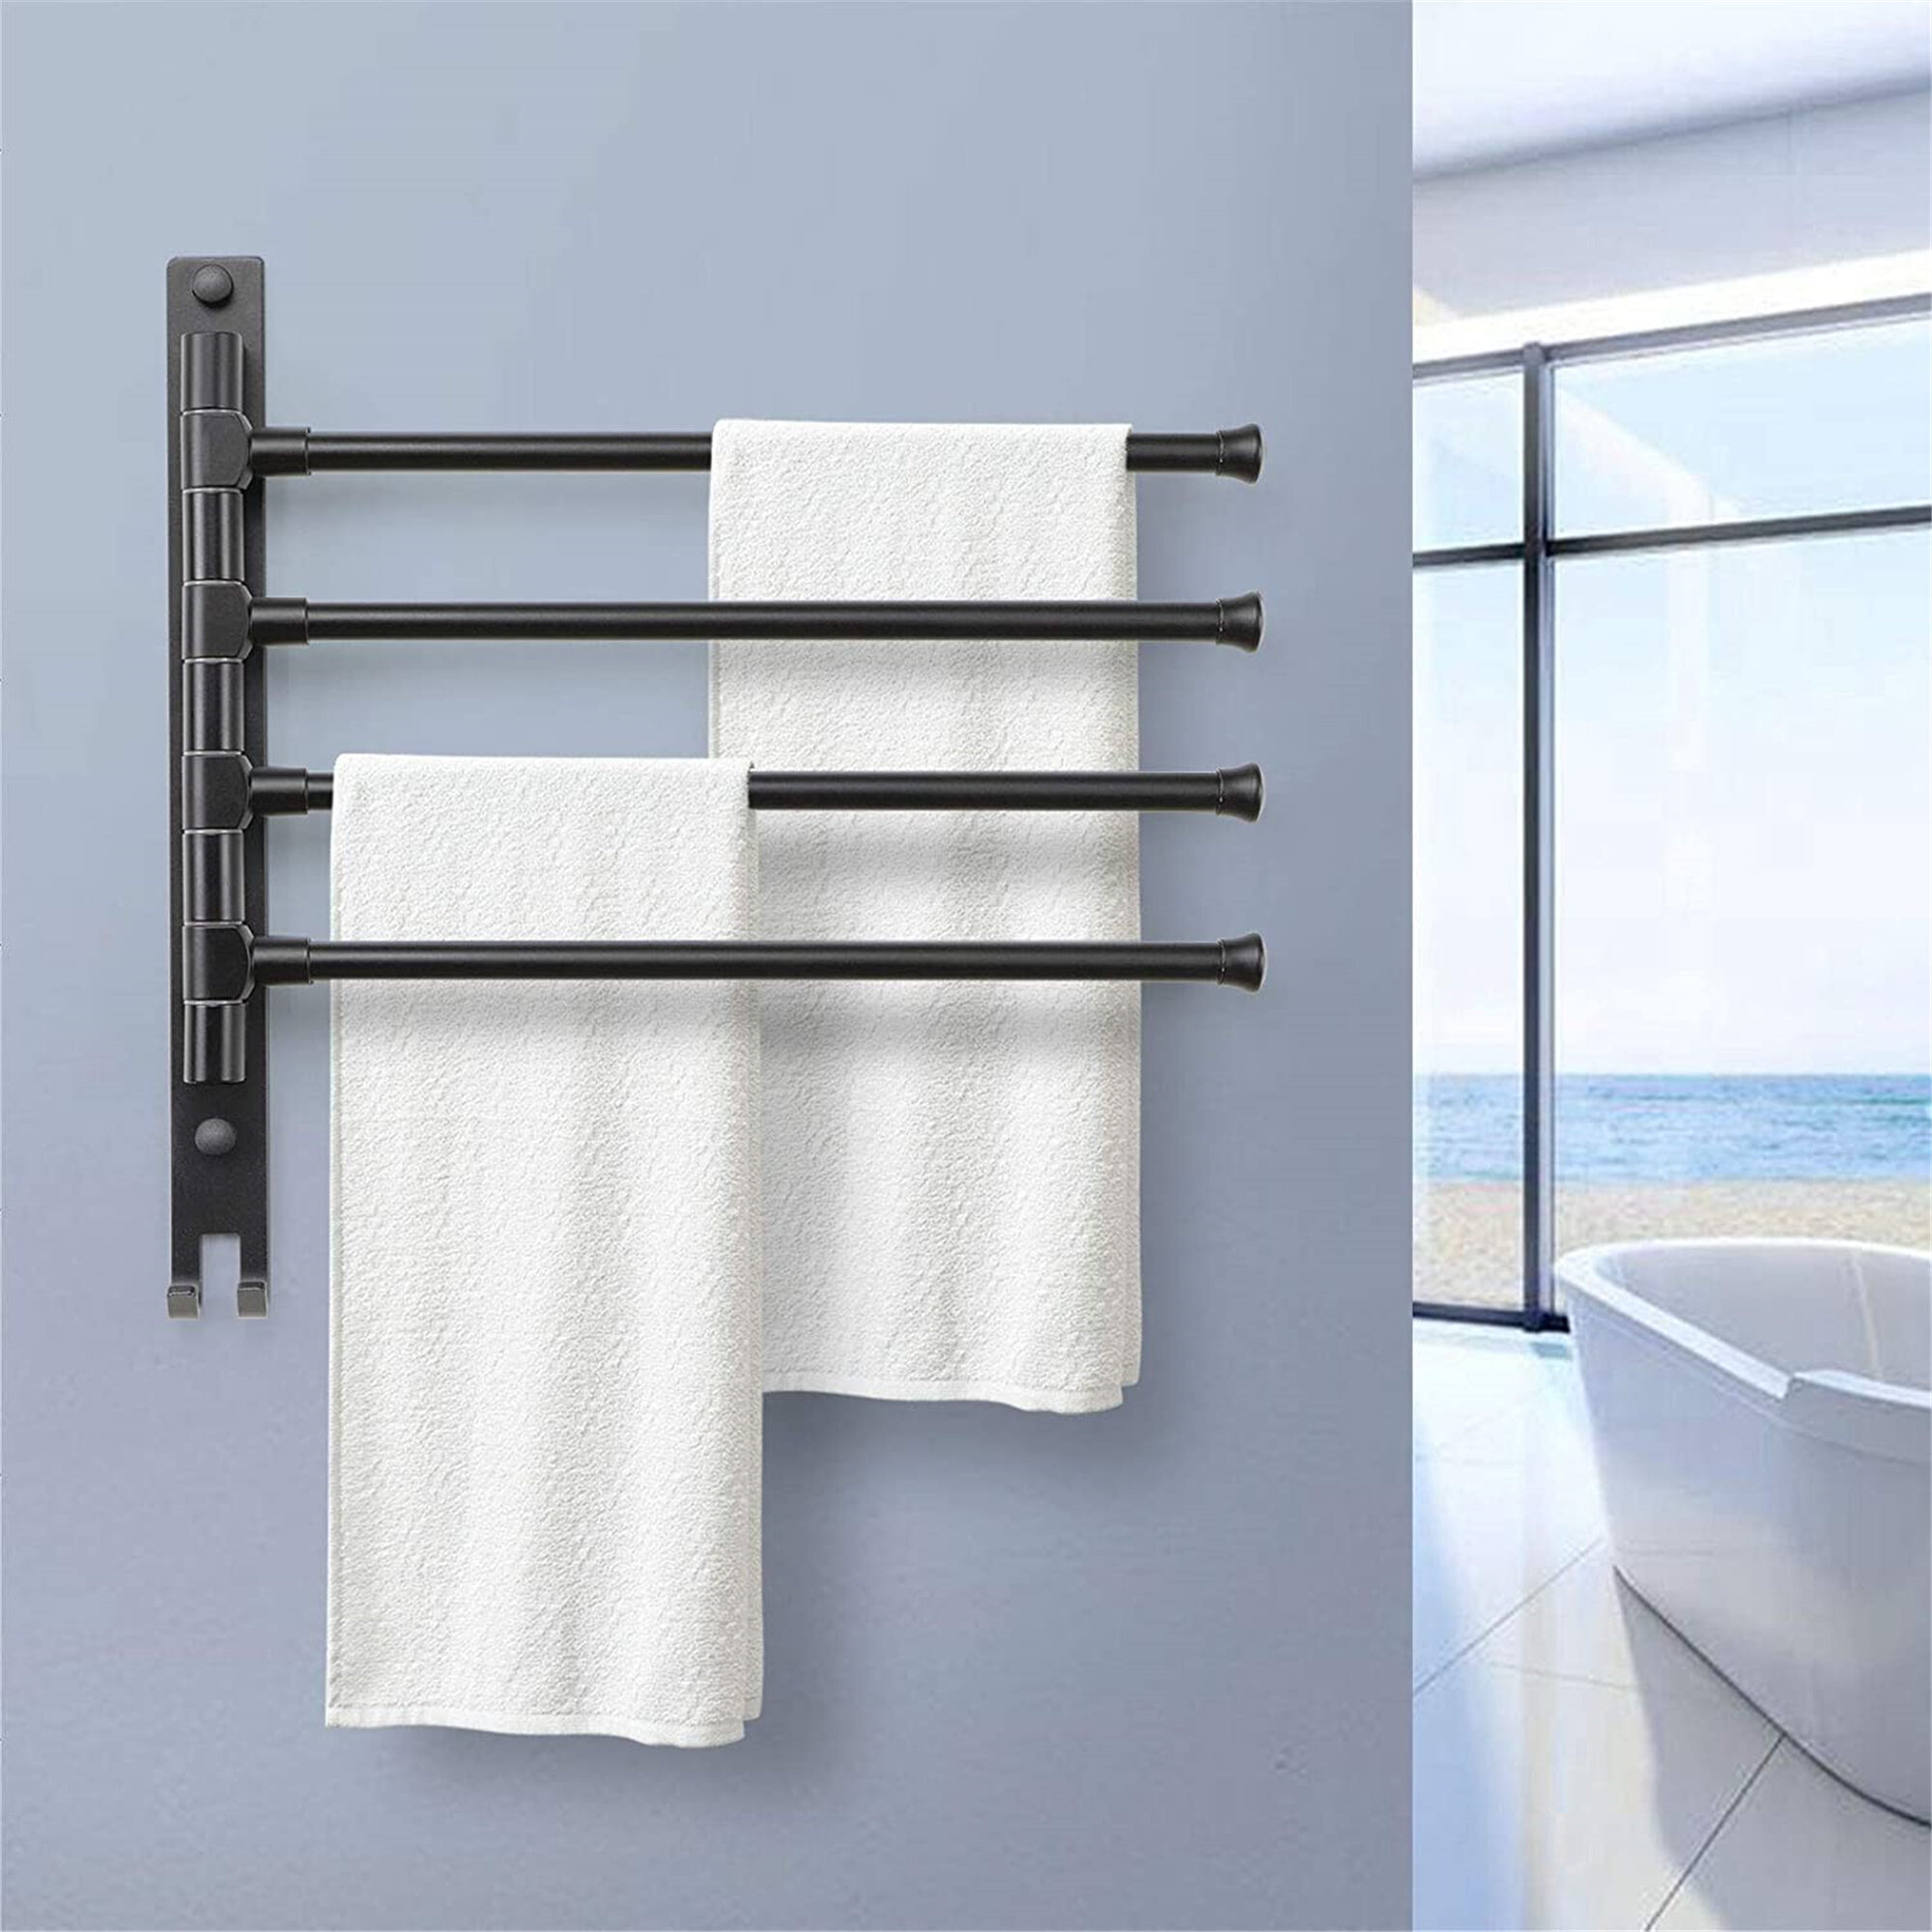 Waterproof Bathroom Storage Rack Rustproof Floating Wall Shelf with Towel Bar